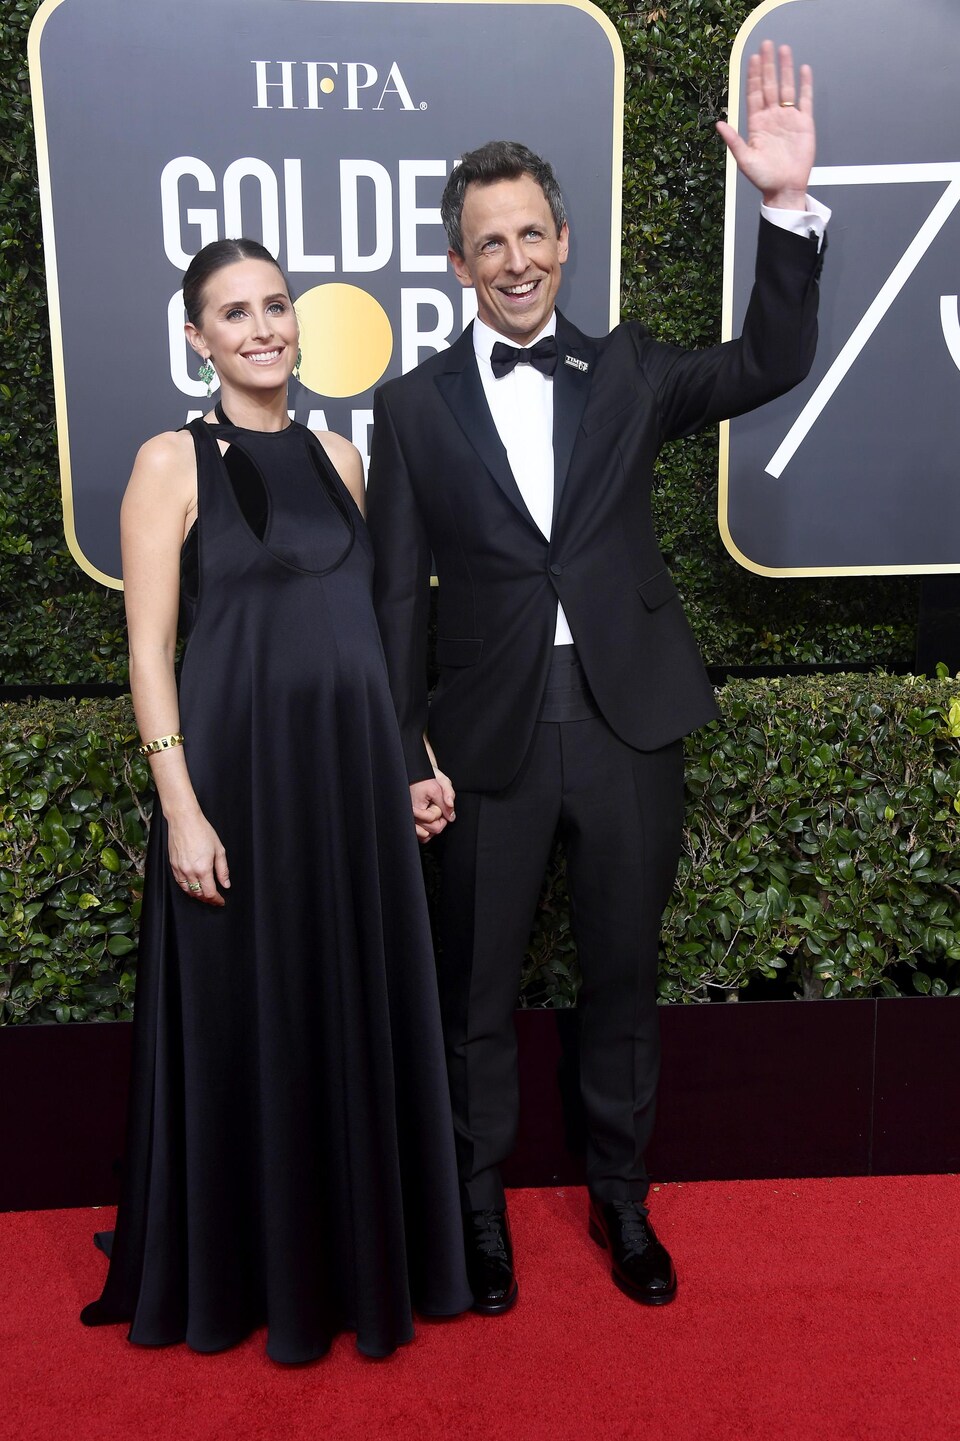 L'animateur de la soirée, Seth Meyers, en compagnie de sa conjointe, Alexi Ashe Meyers, sur le tapis rouge des Golden Globes